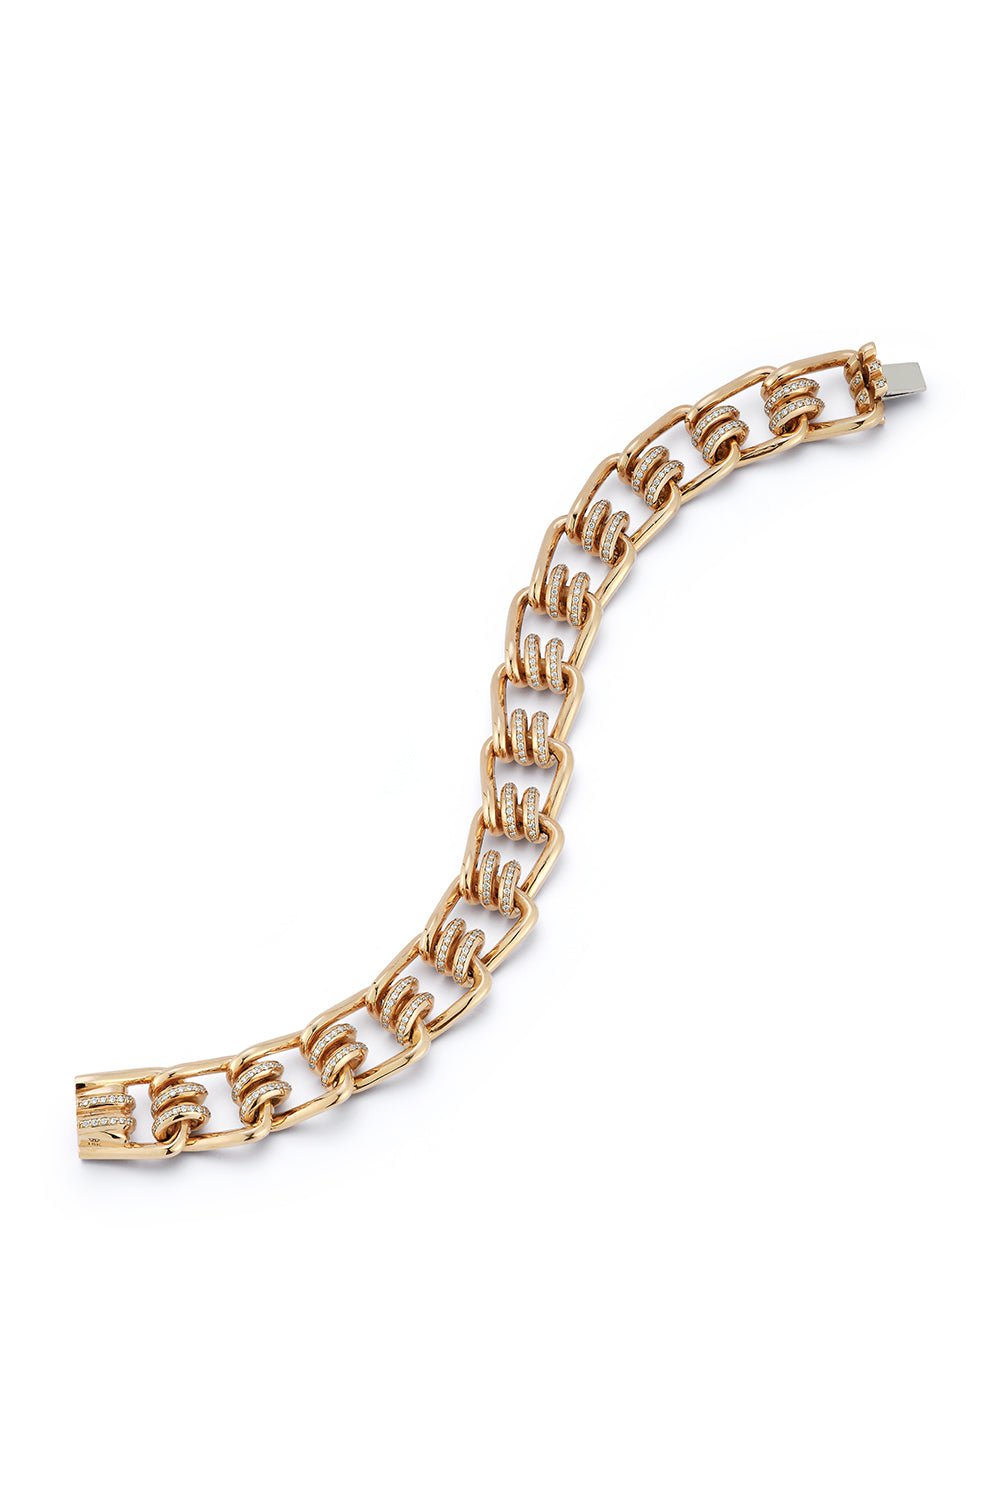 WALTERS FAITH-Huxley Diamond Coil Link Bracelet-ROSE GOLD